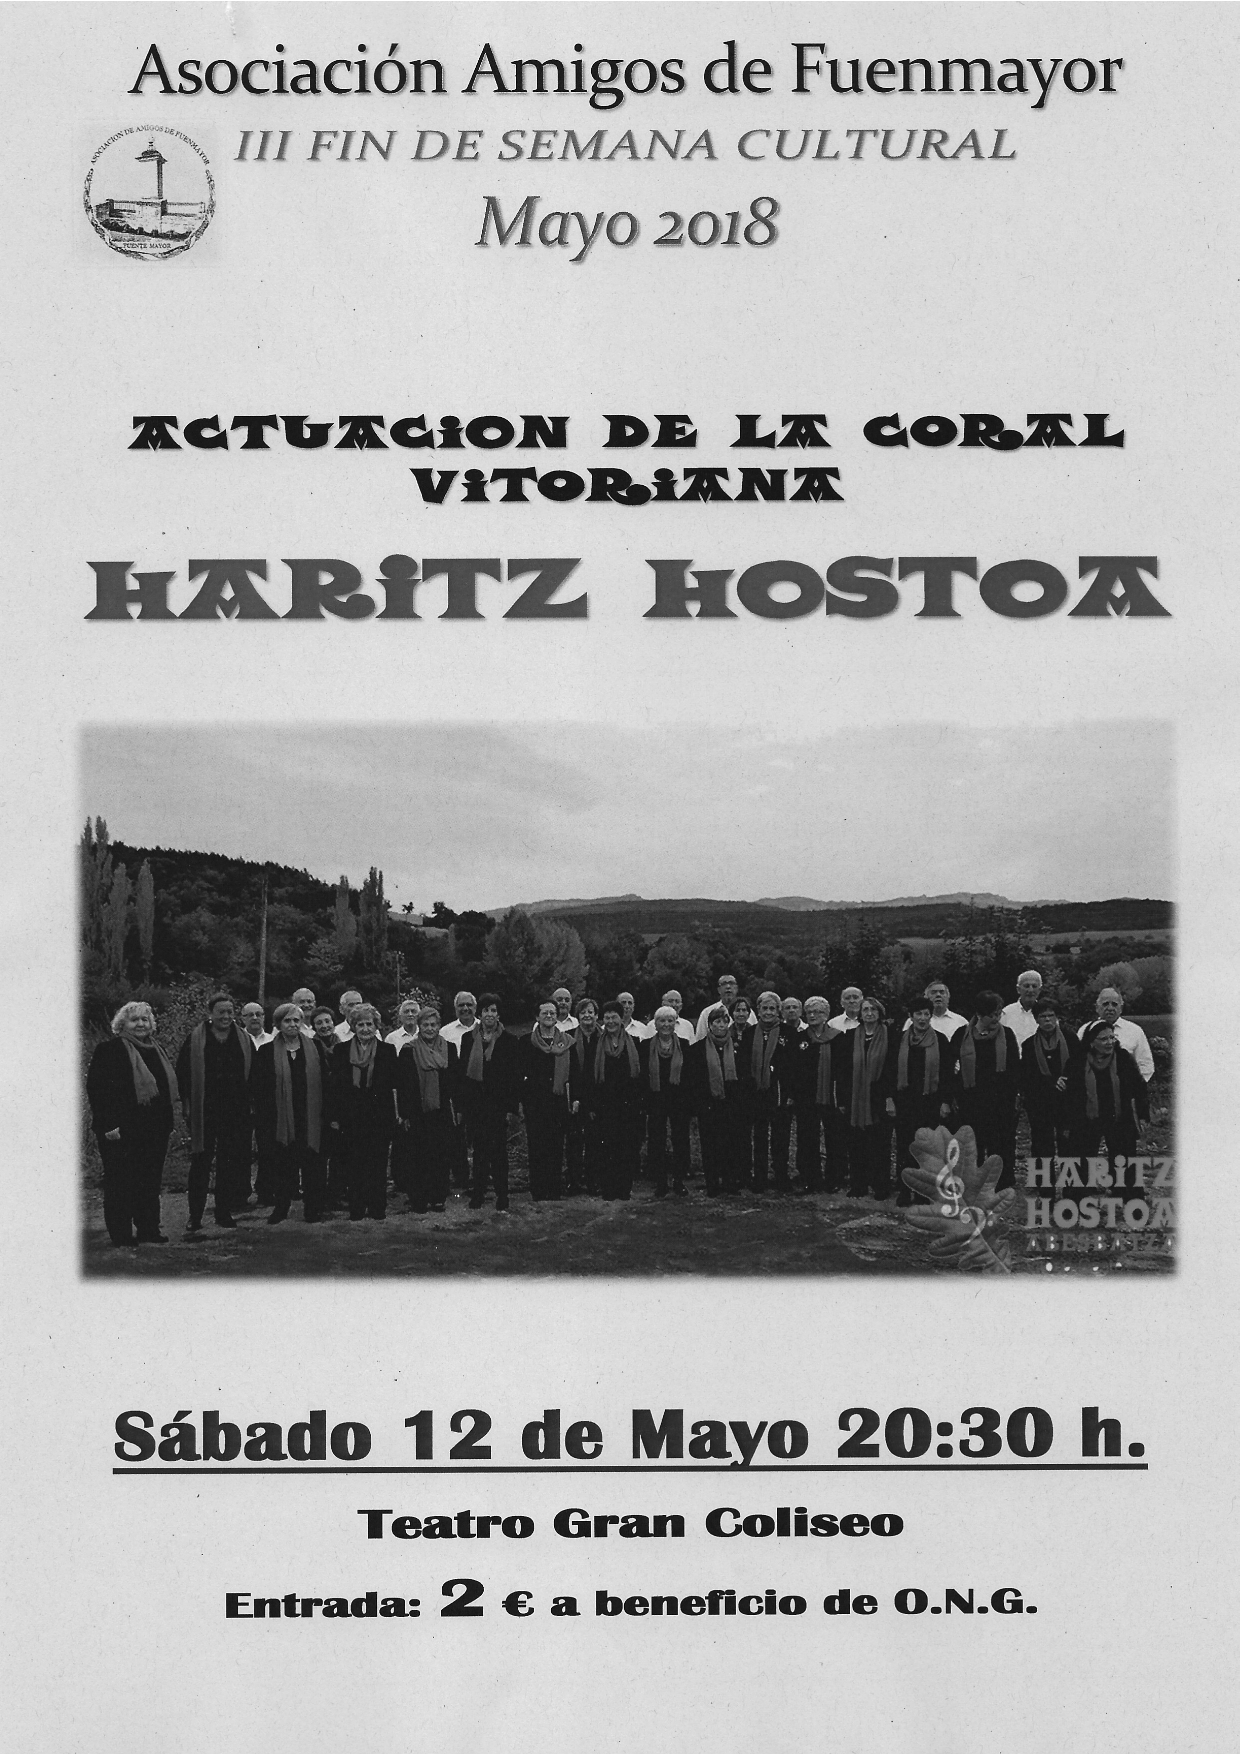 Dentro de la III Semana Cultural de Fuenmayor (La Rioja) Actuación de HARITZ HOSTOA ABESBATZA el día 12 de mayo a las 20:30 en el Teatro Gran Coliseo de Fuenmayor